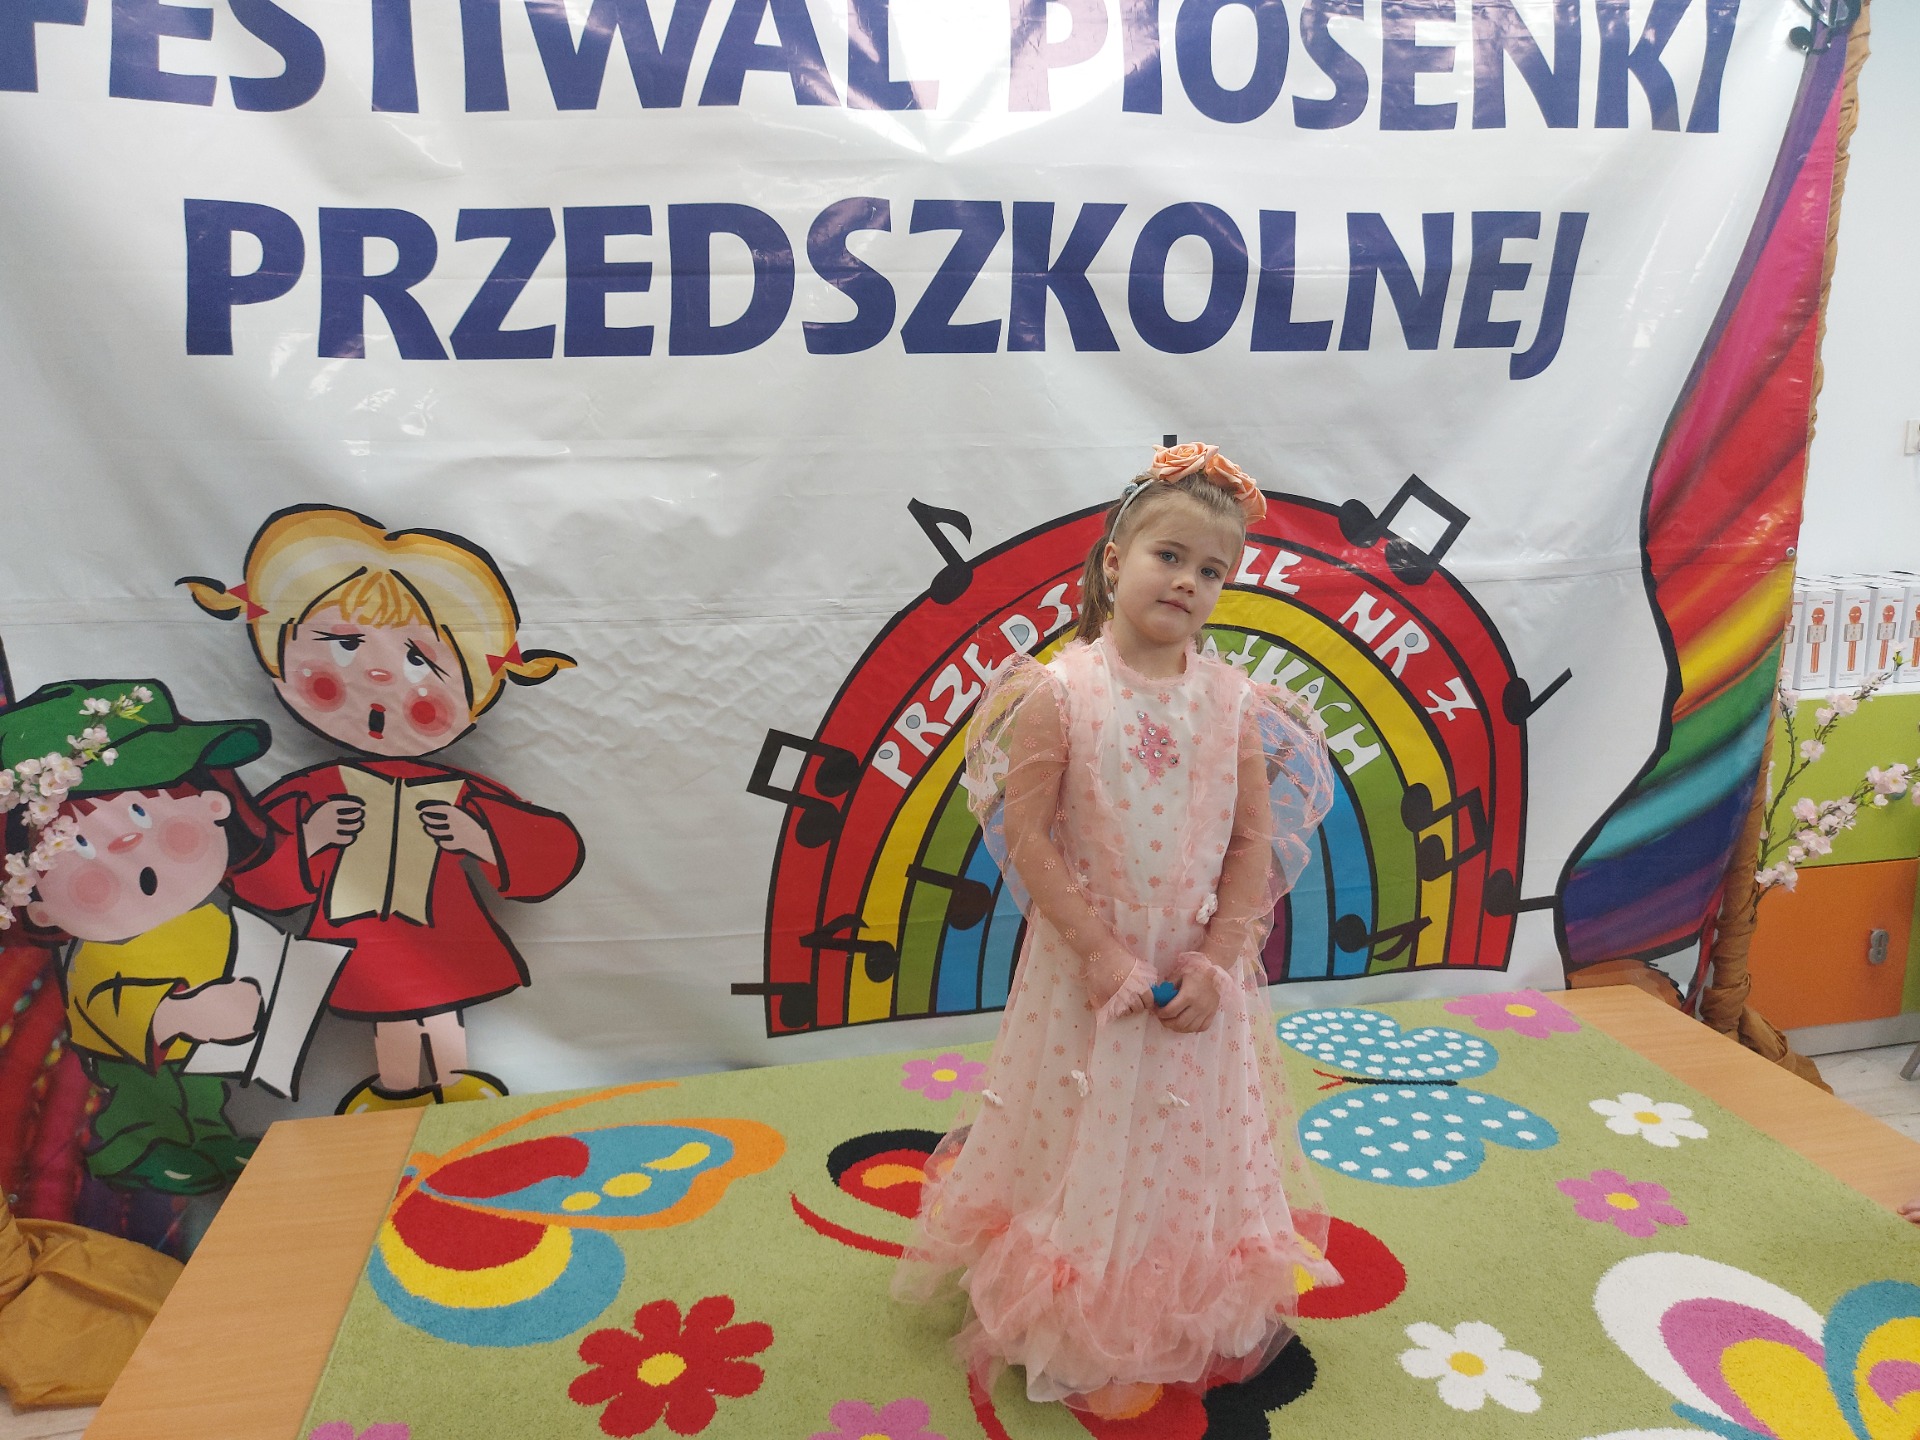 Festiwal Piosenki Przedszkolnej w Przedszkolu nr 7 - Obrazek 1